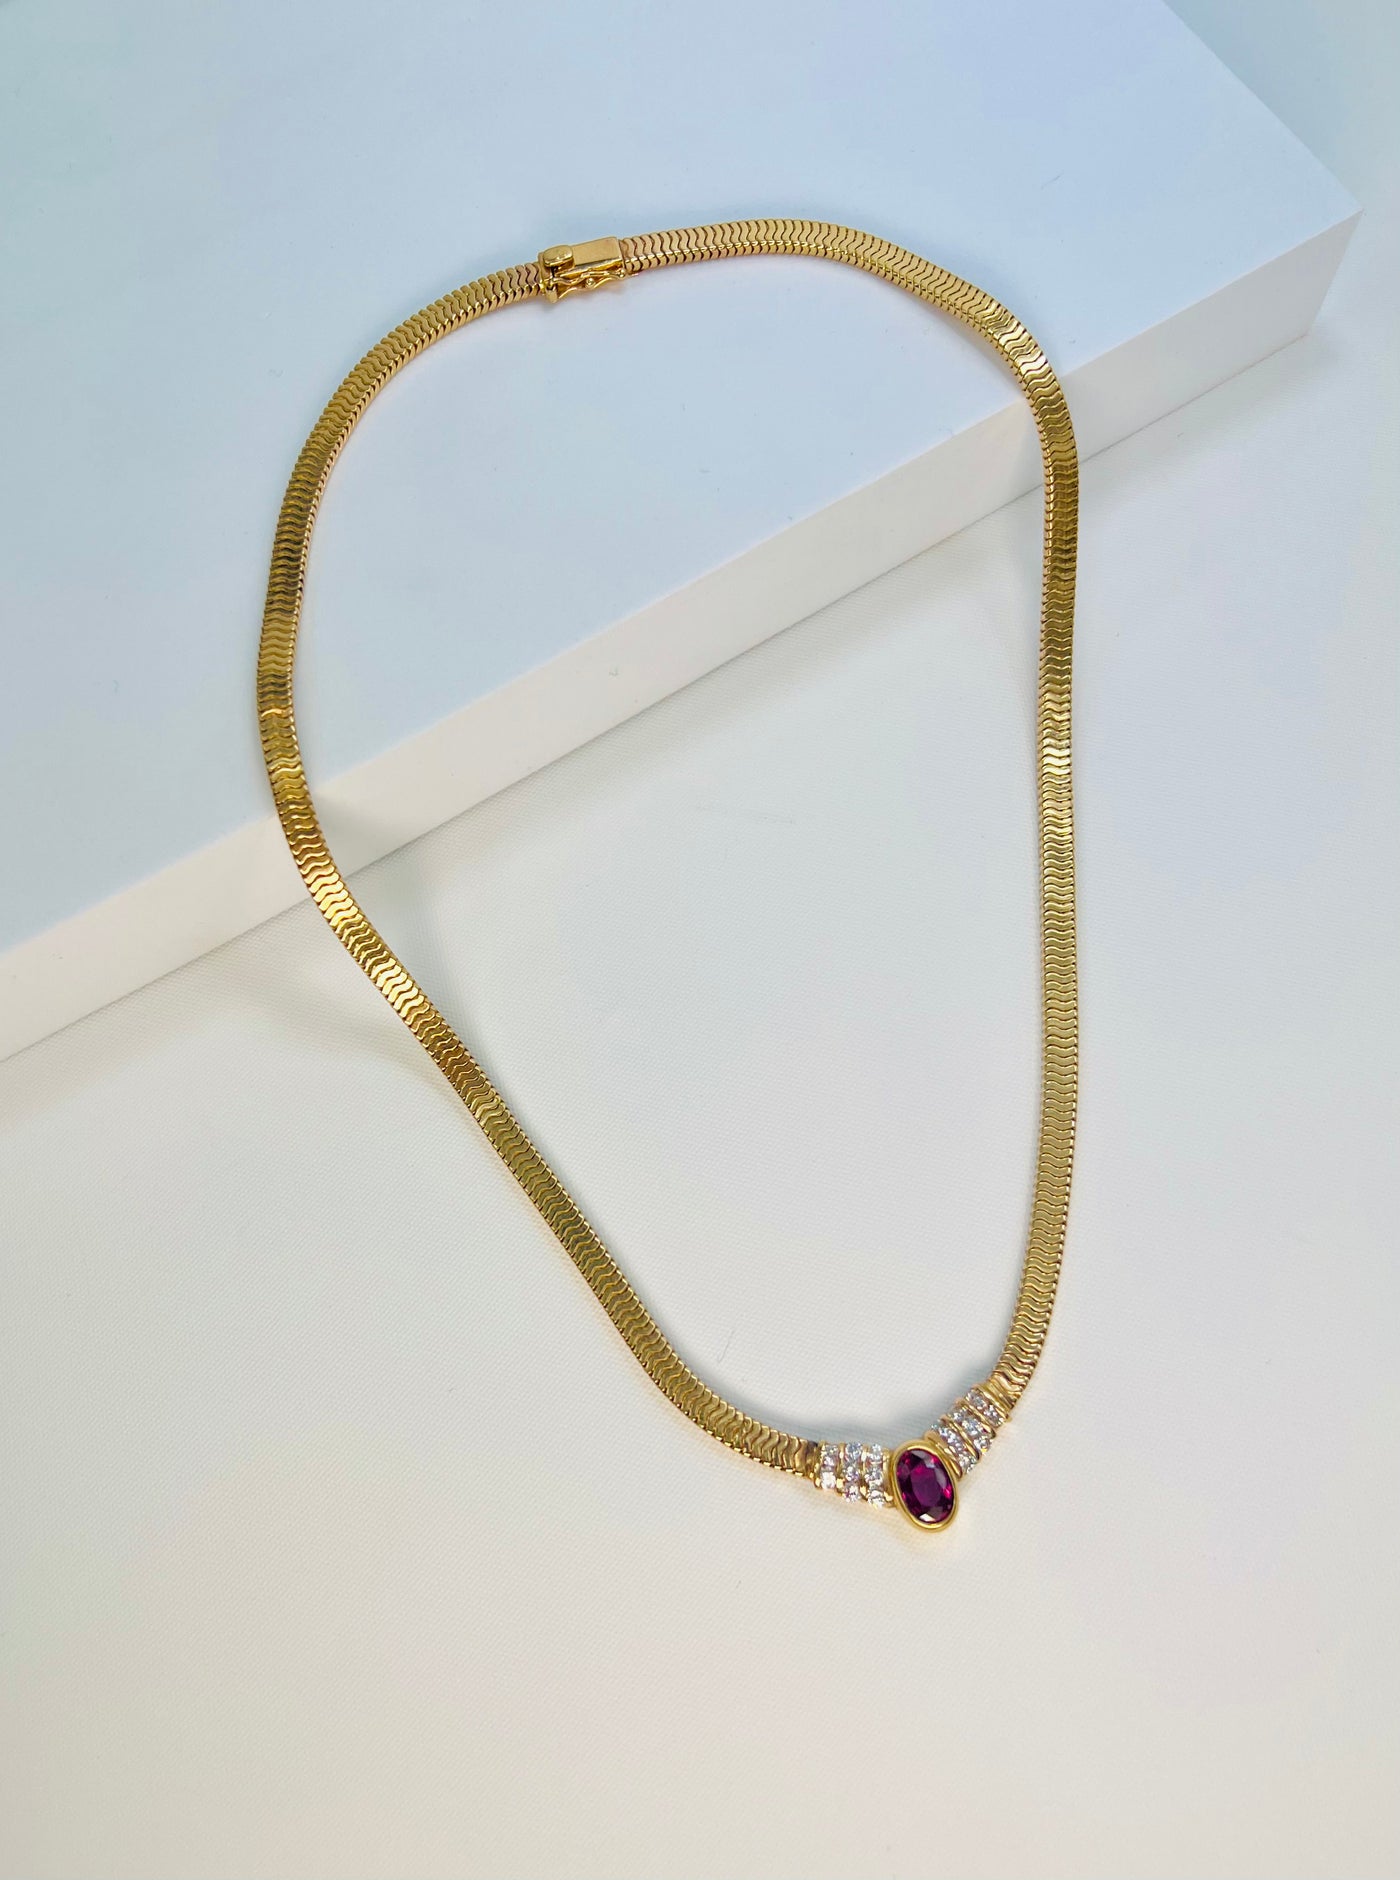 14k Gold Diamond Necklace, Ruby Stone